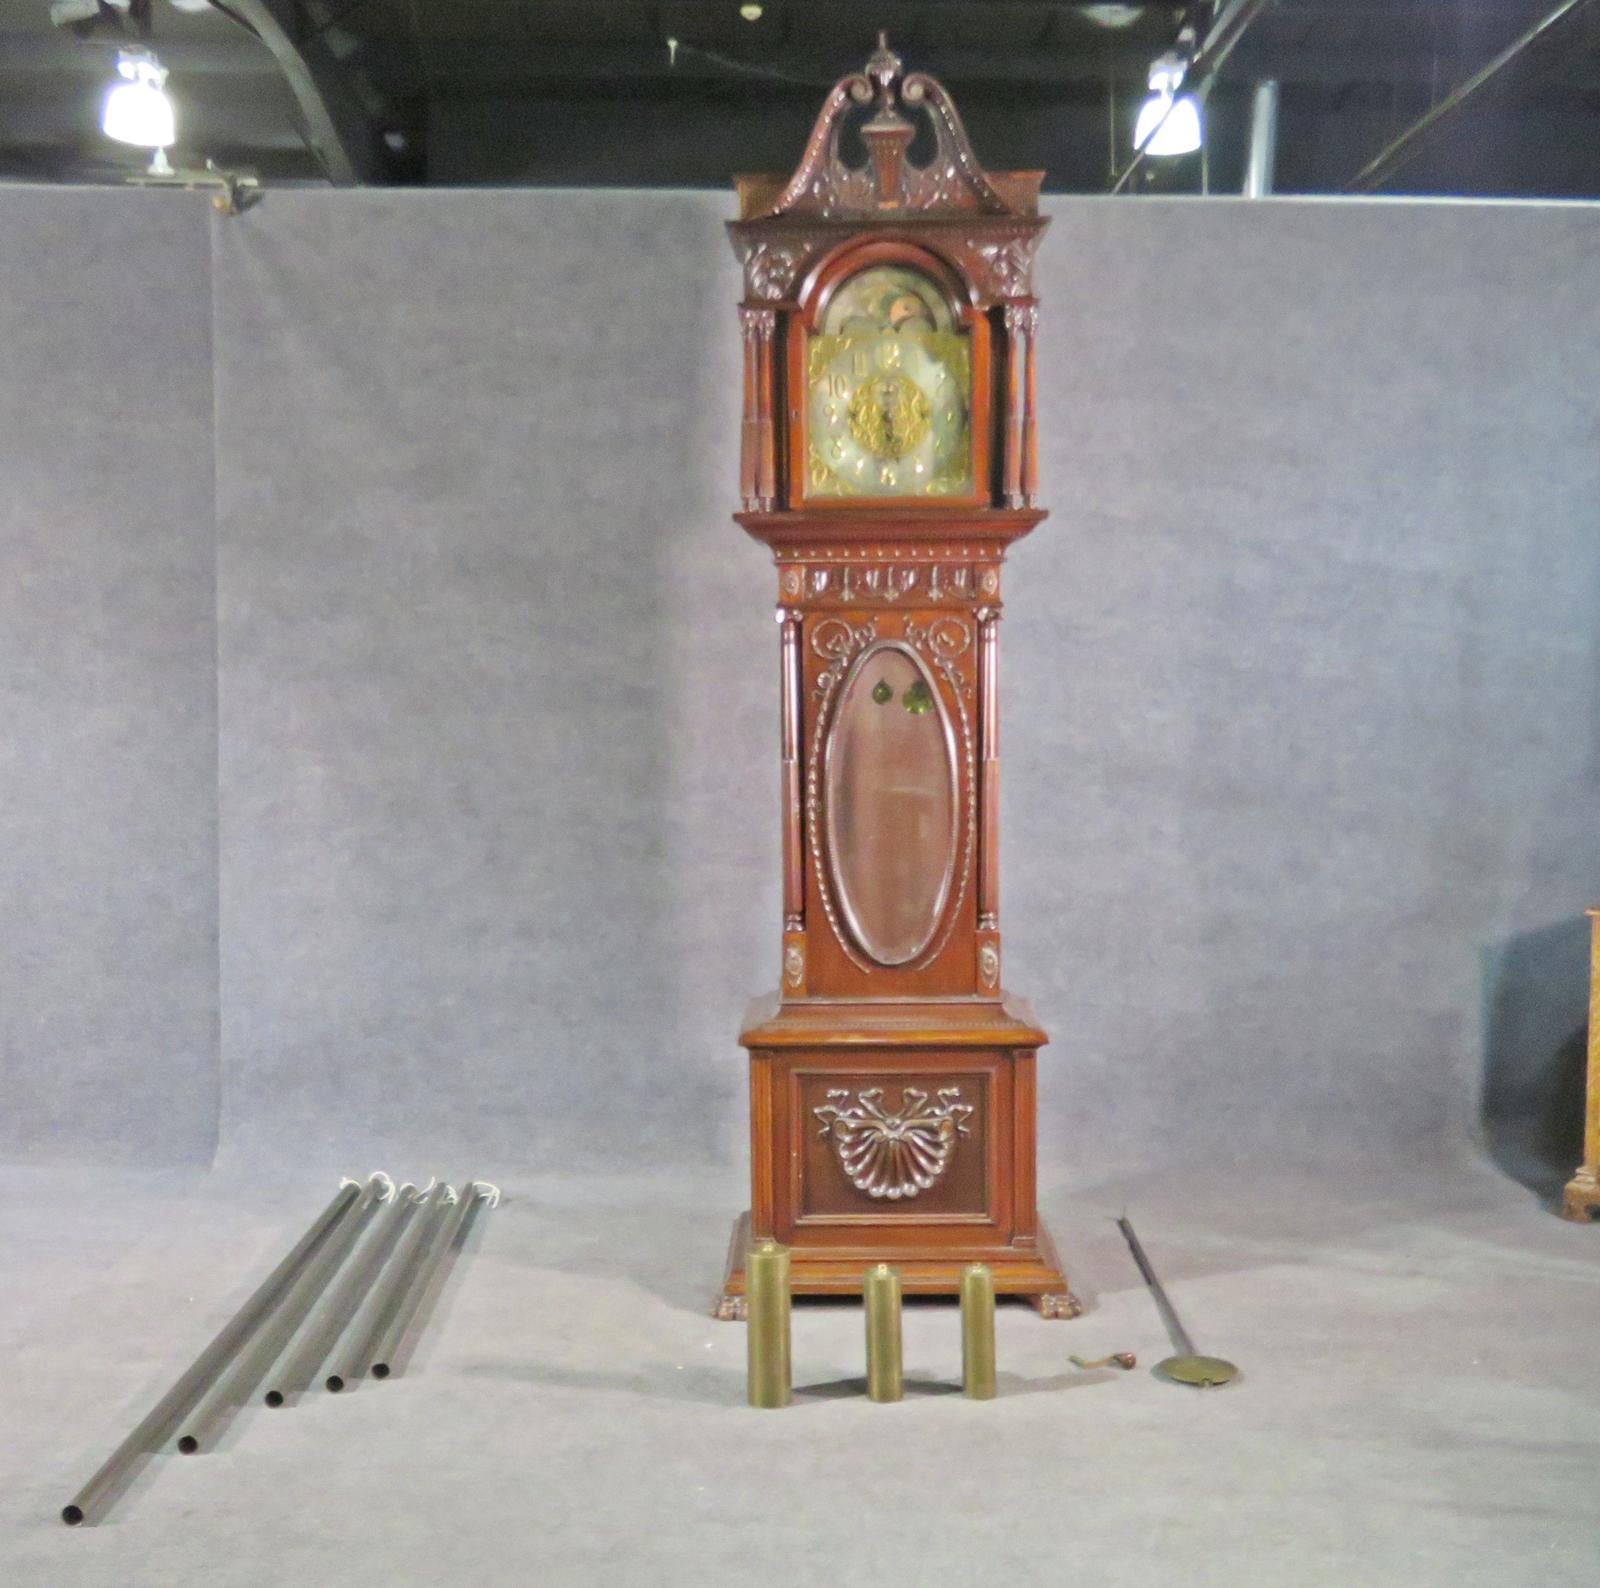 Dies ist eine spektakuläre Uhr mit, was ich glaube, ist eine solide geschnitzte Walnuss Durfee Gehäuse und und hat eine Elliot of London Bewegung. Der Fall hat einige Anzeichen von Verschleiß und ist in seinem ursprünglichen Zustand. Die Uhr